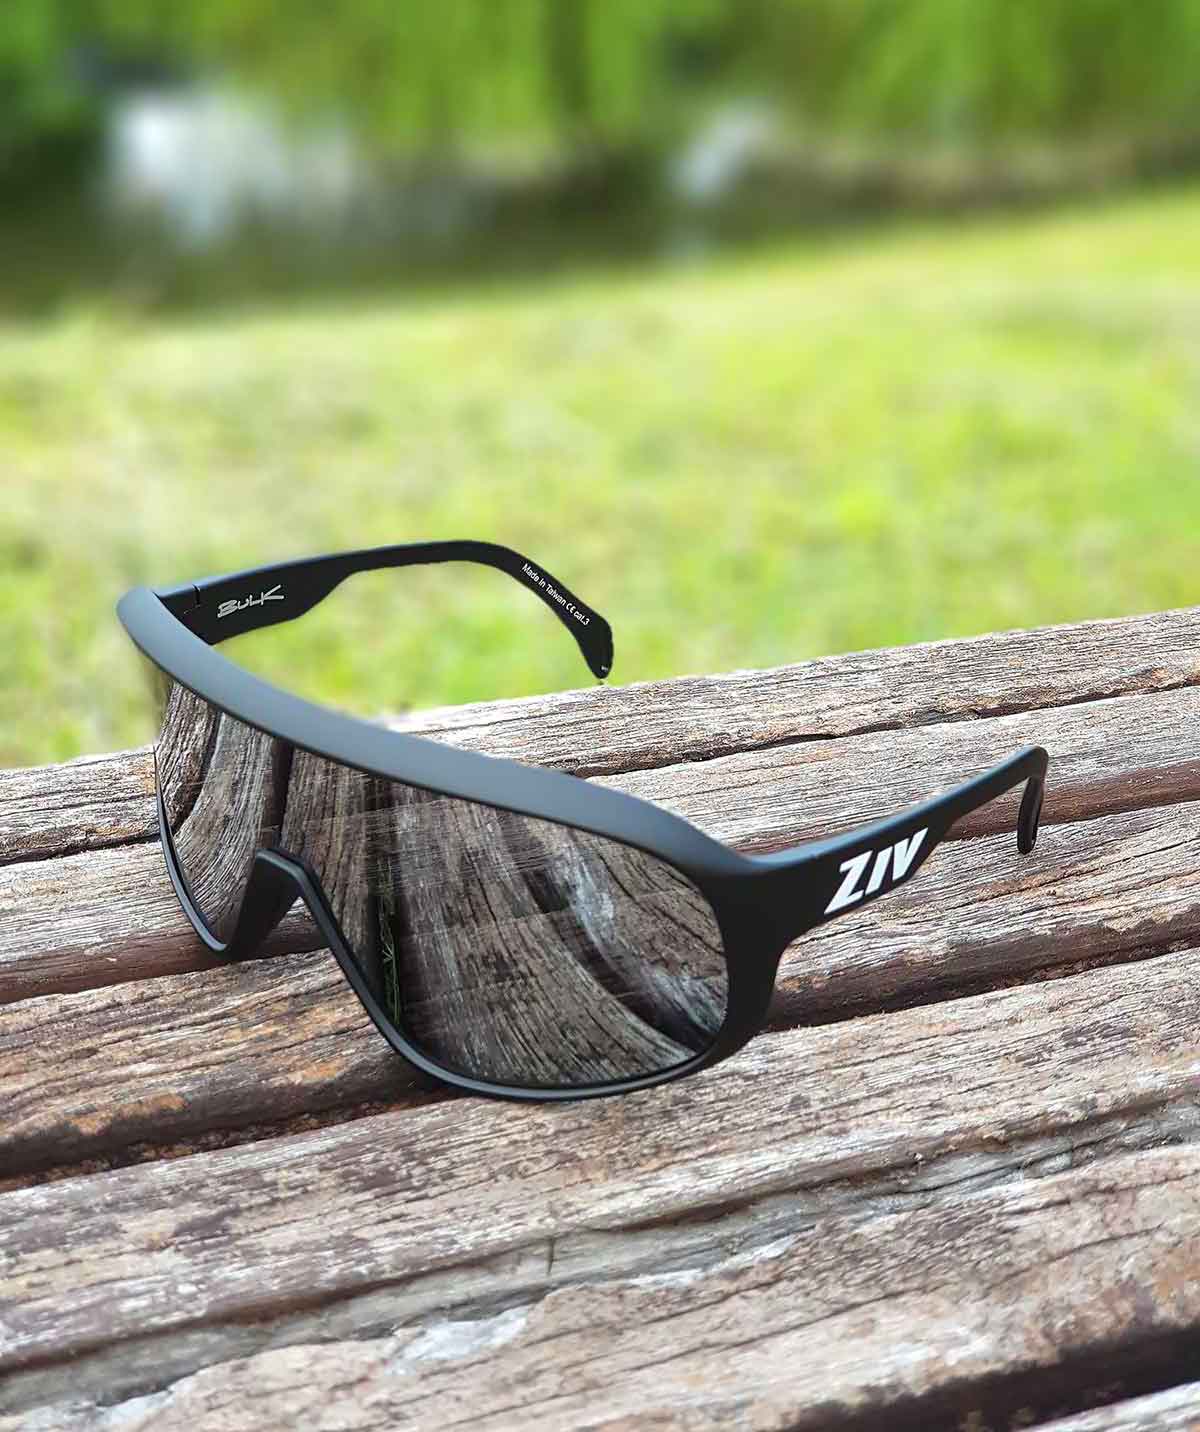 BULK系列編號129的亮黑框運動眼鏡